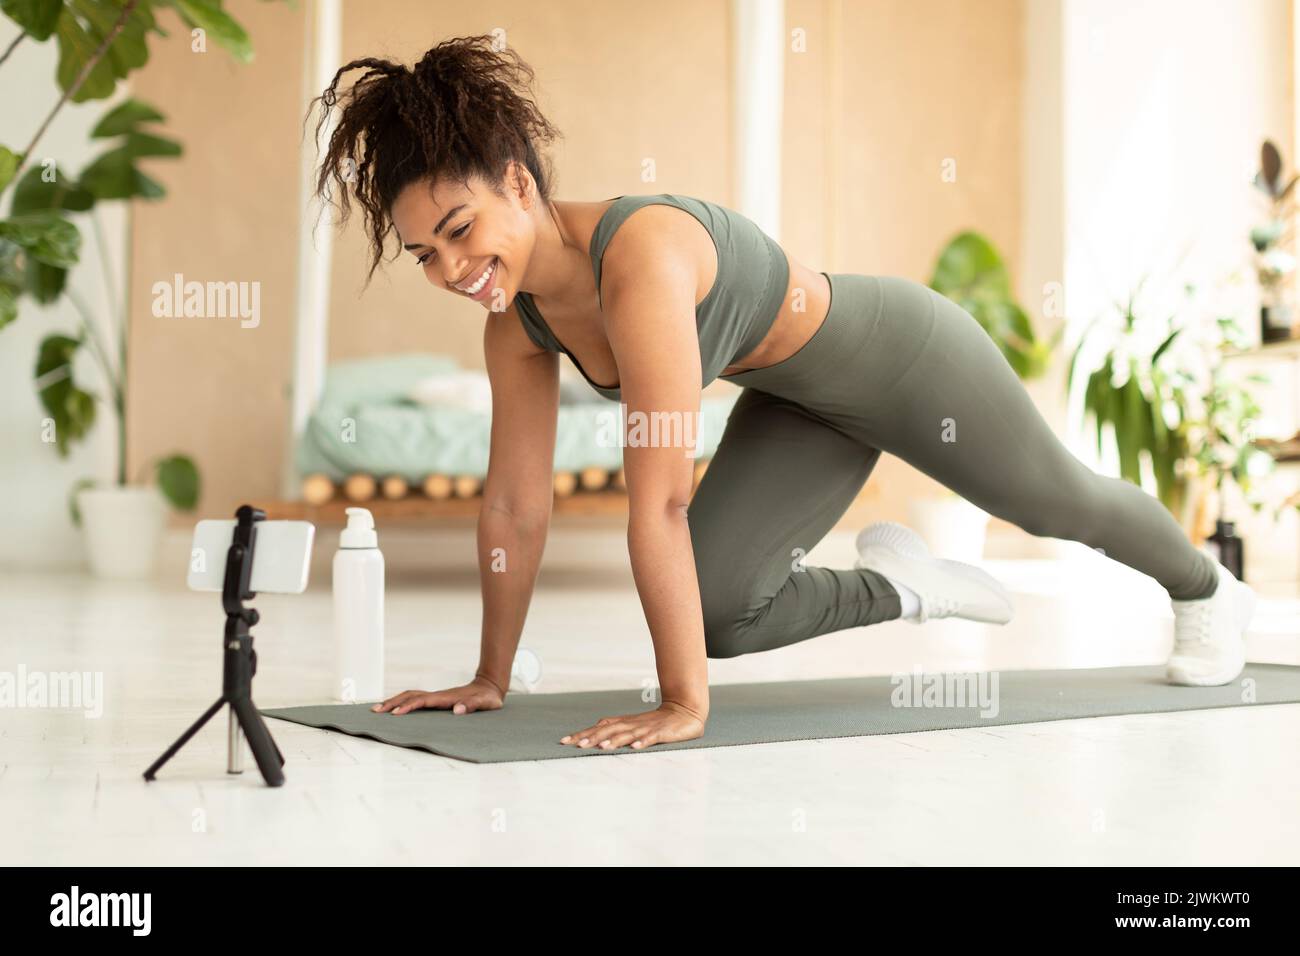 Entraînement en ligne. FIT afro-américaine femme faisant des alpinistes exercice sur le tapis de yoga, regardant le smartphone Banque D'Images